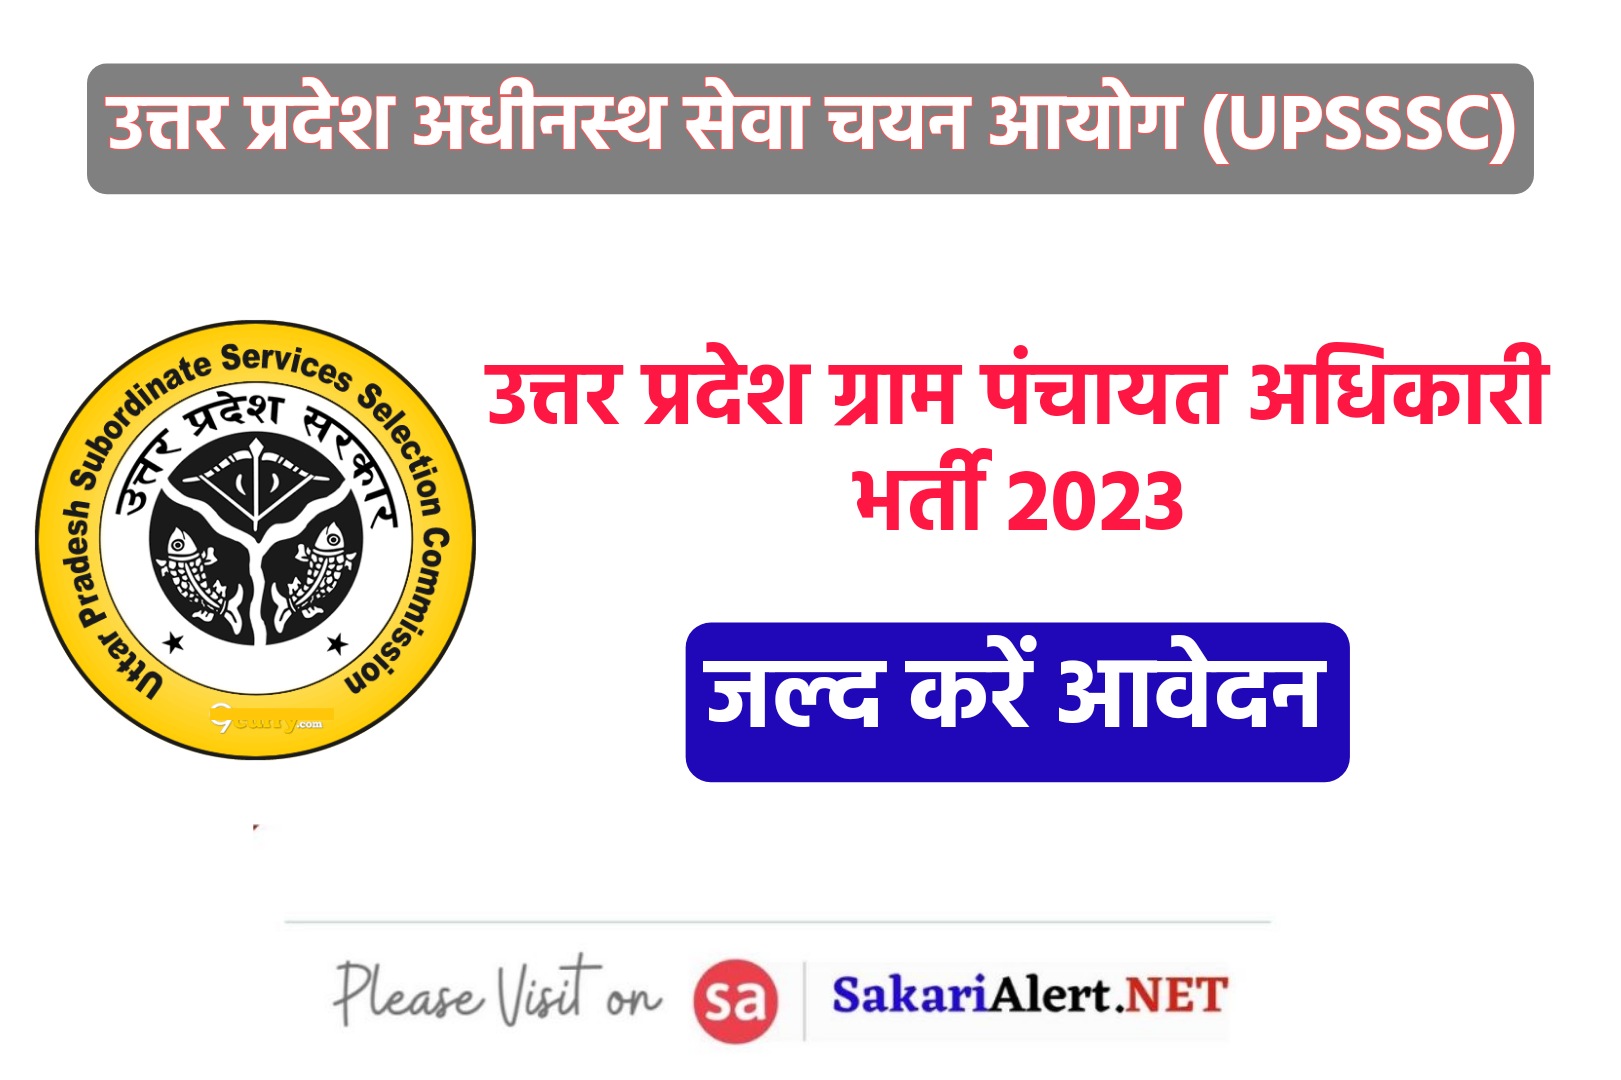 UPSSSC Gram Panchayat Adhikari Recruitment 2023